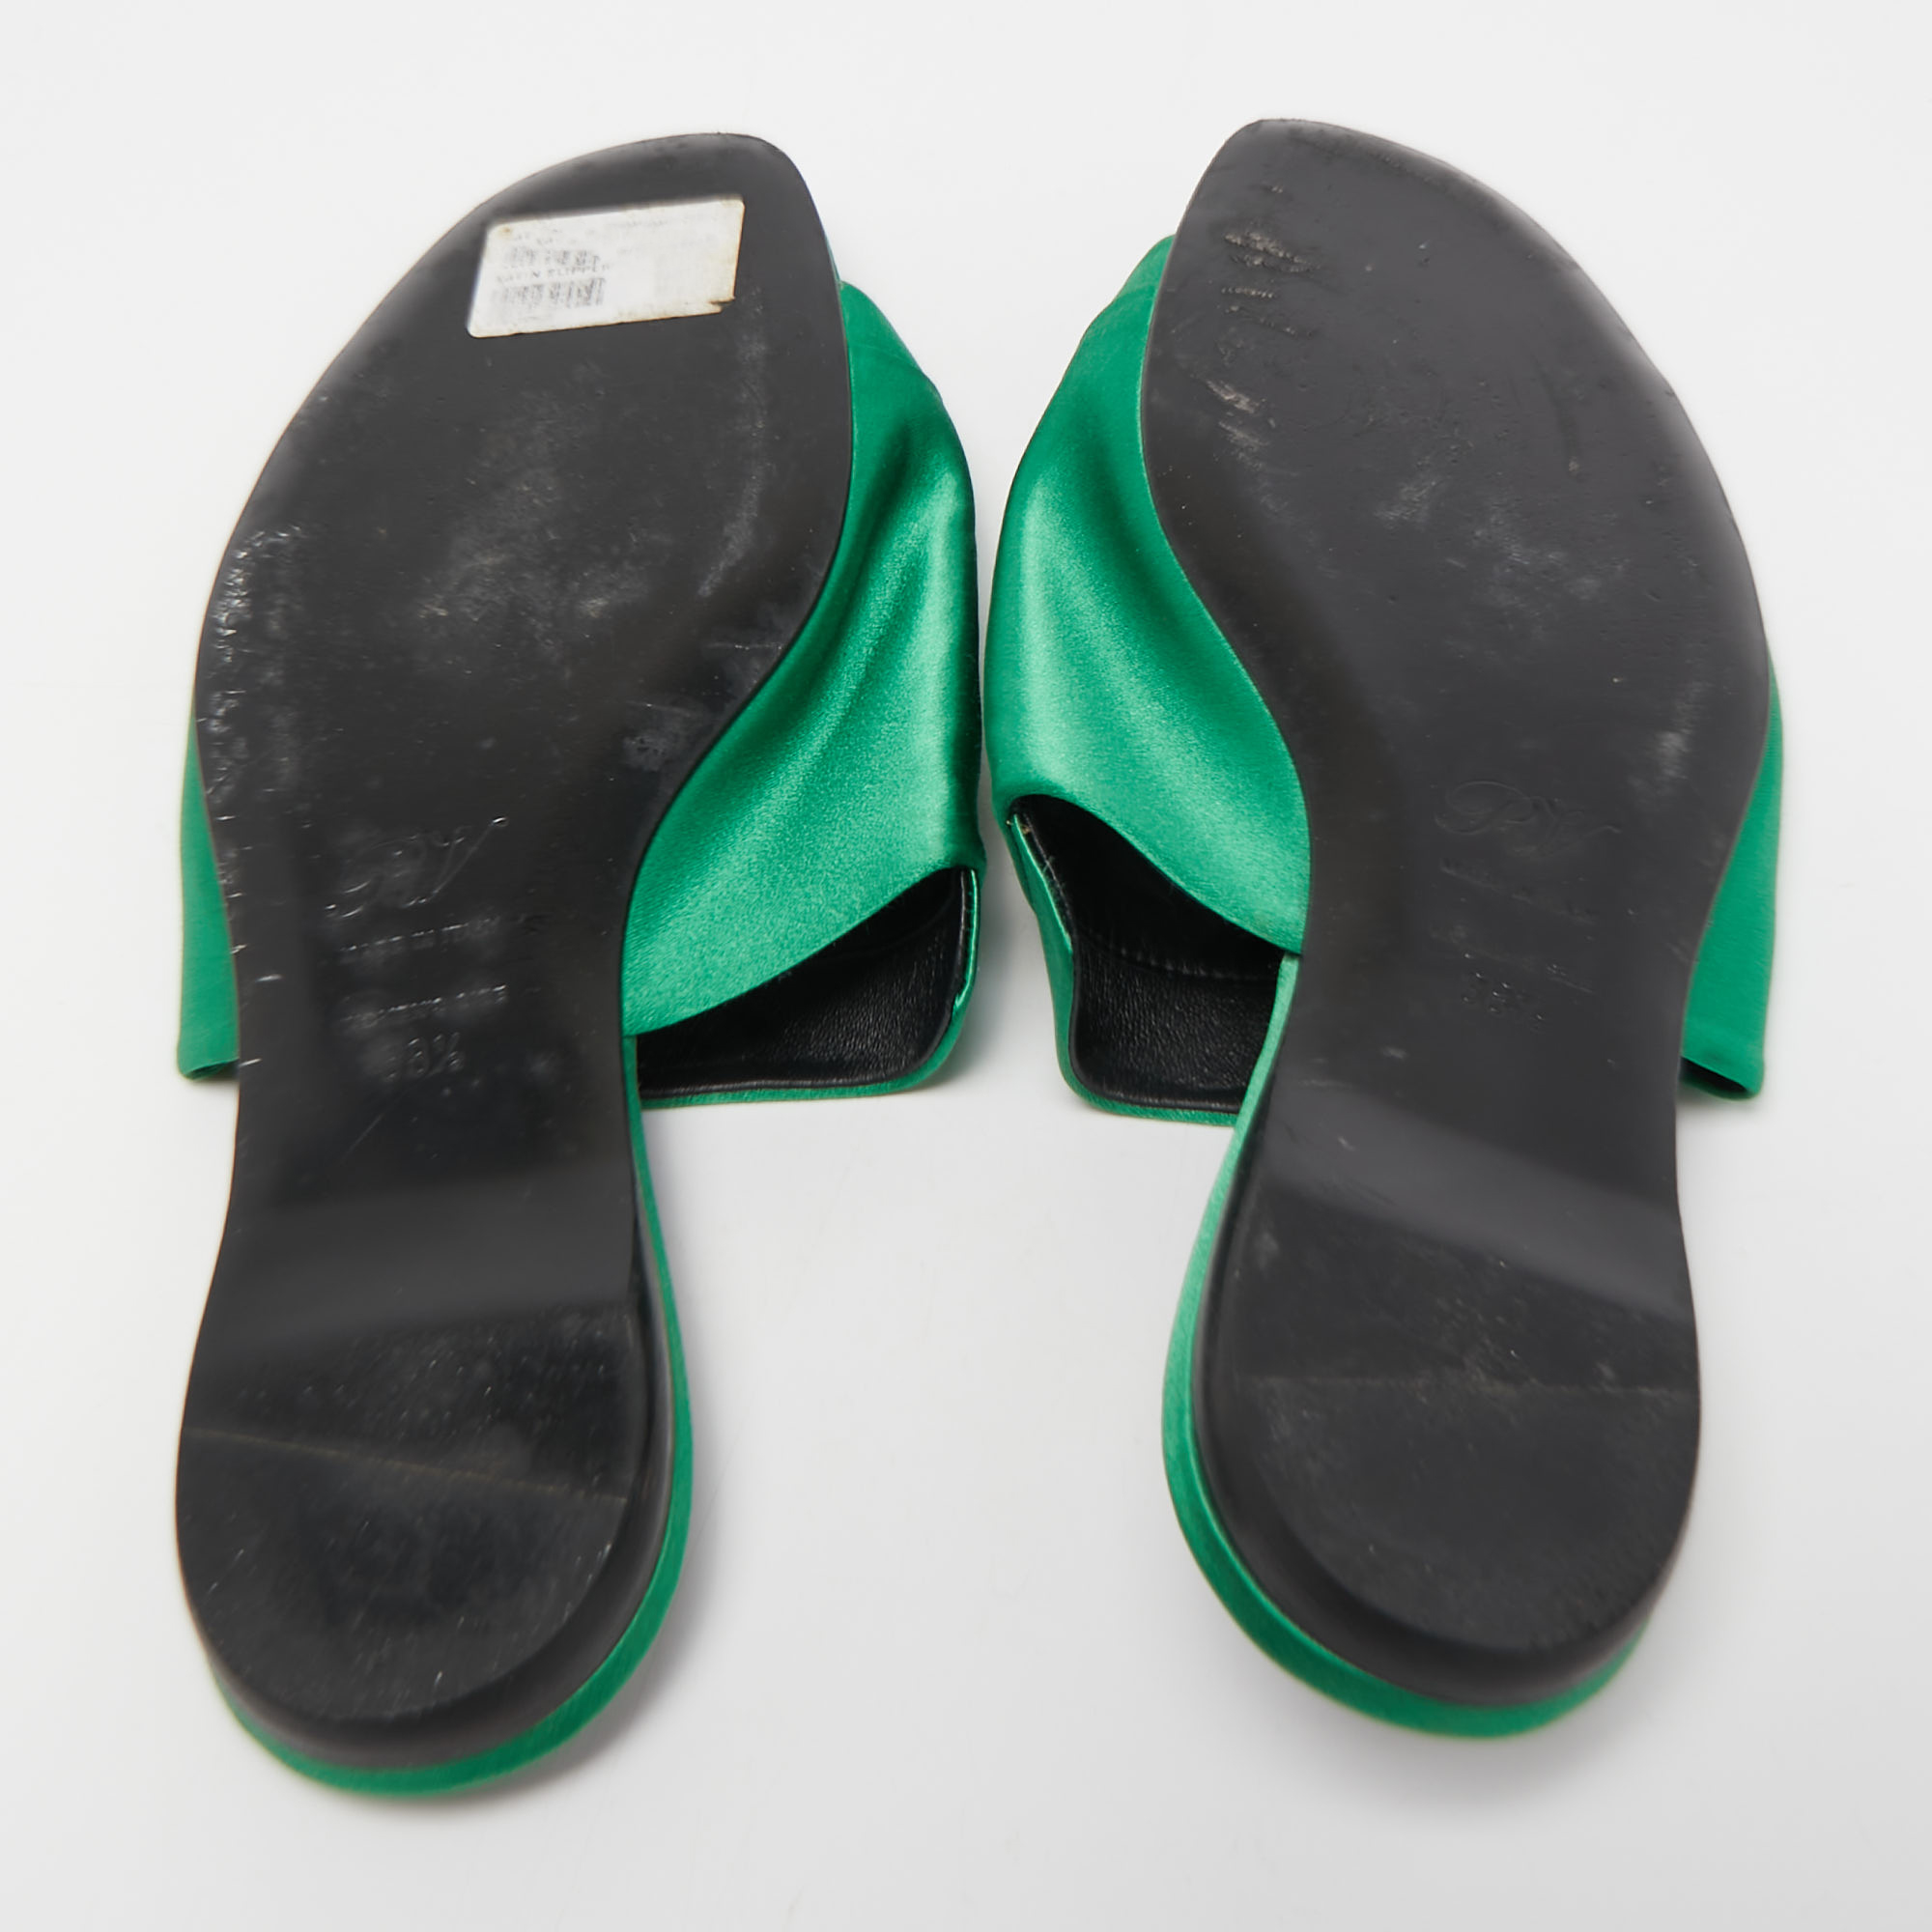 Roger Vivier Green Satin Crystal Embellished Flat Sandals Size 38.5